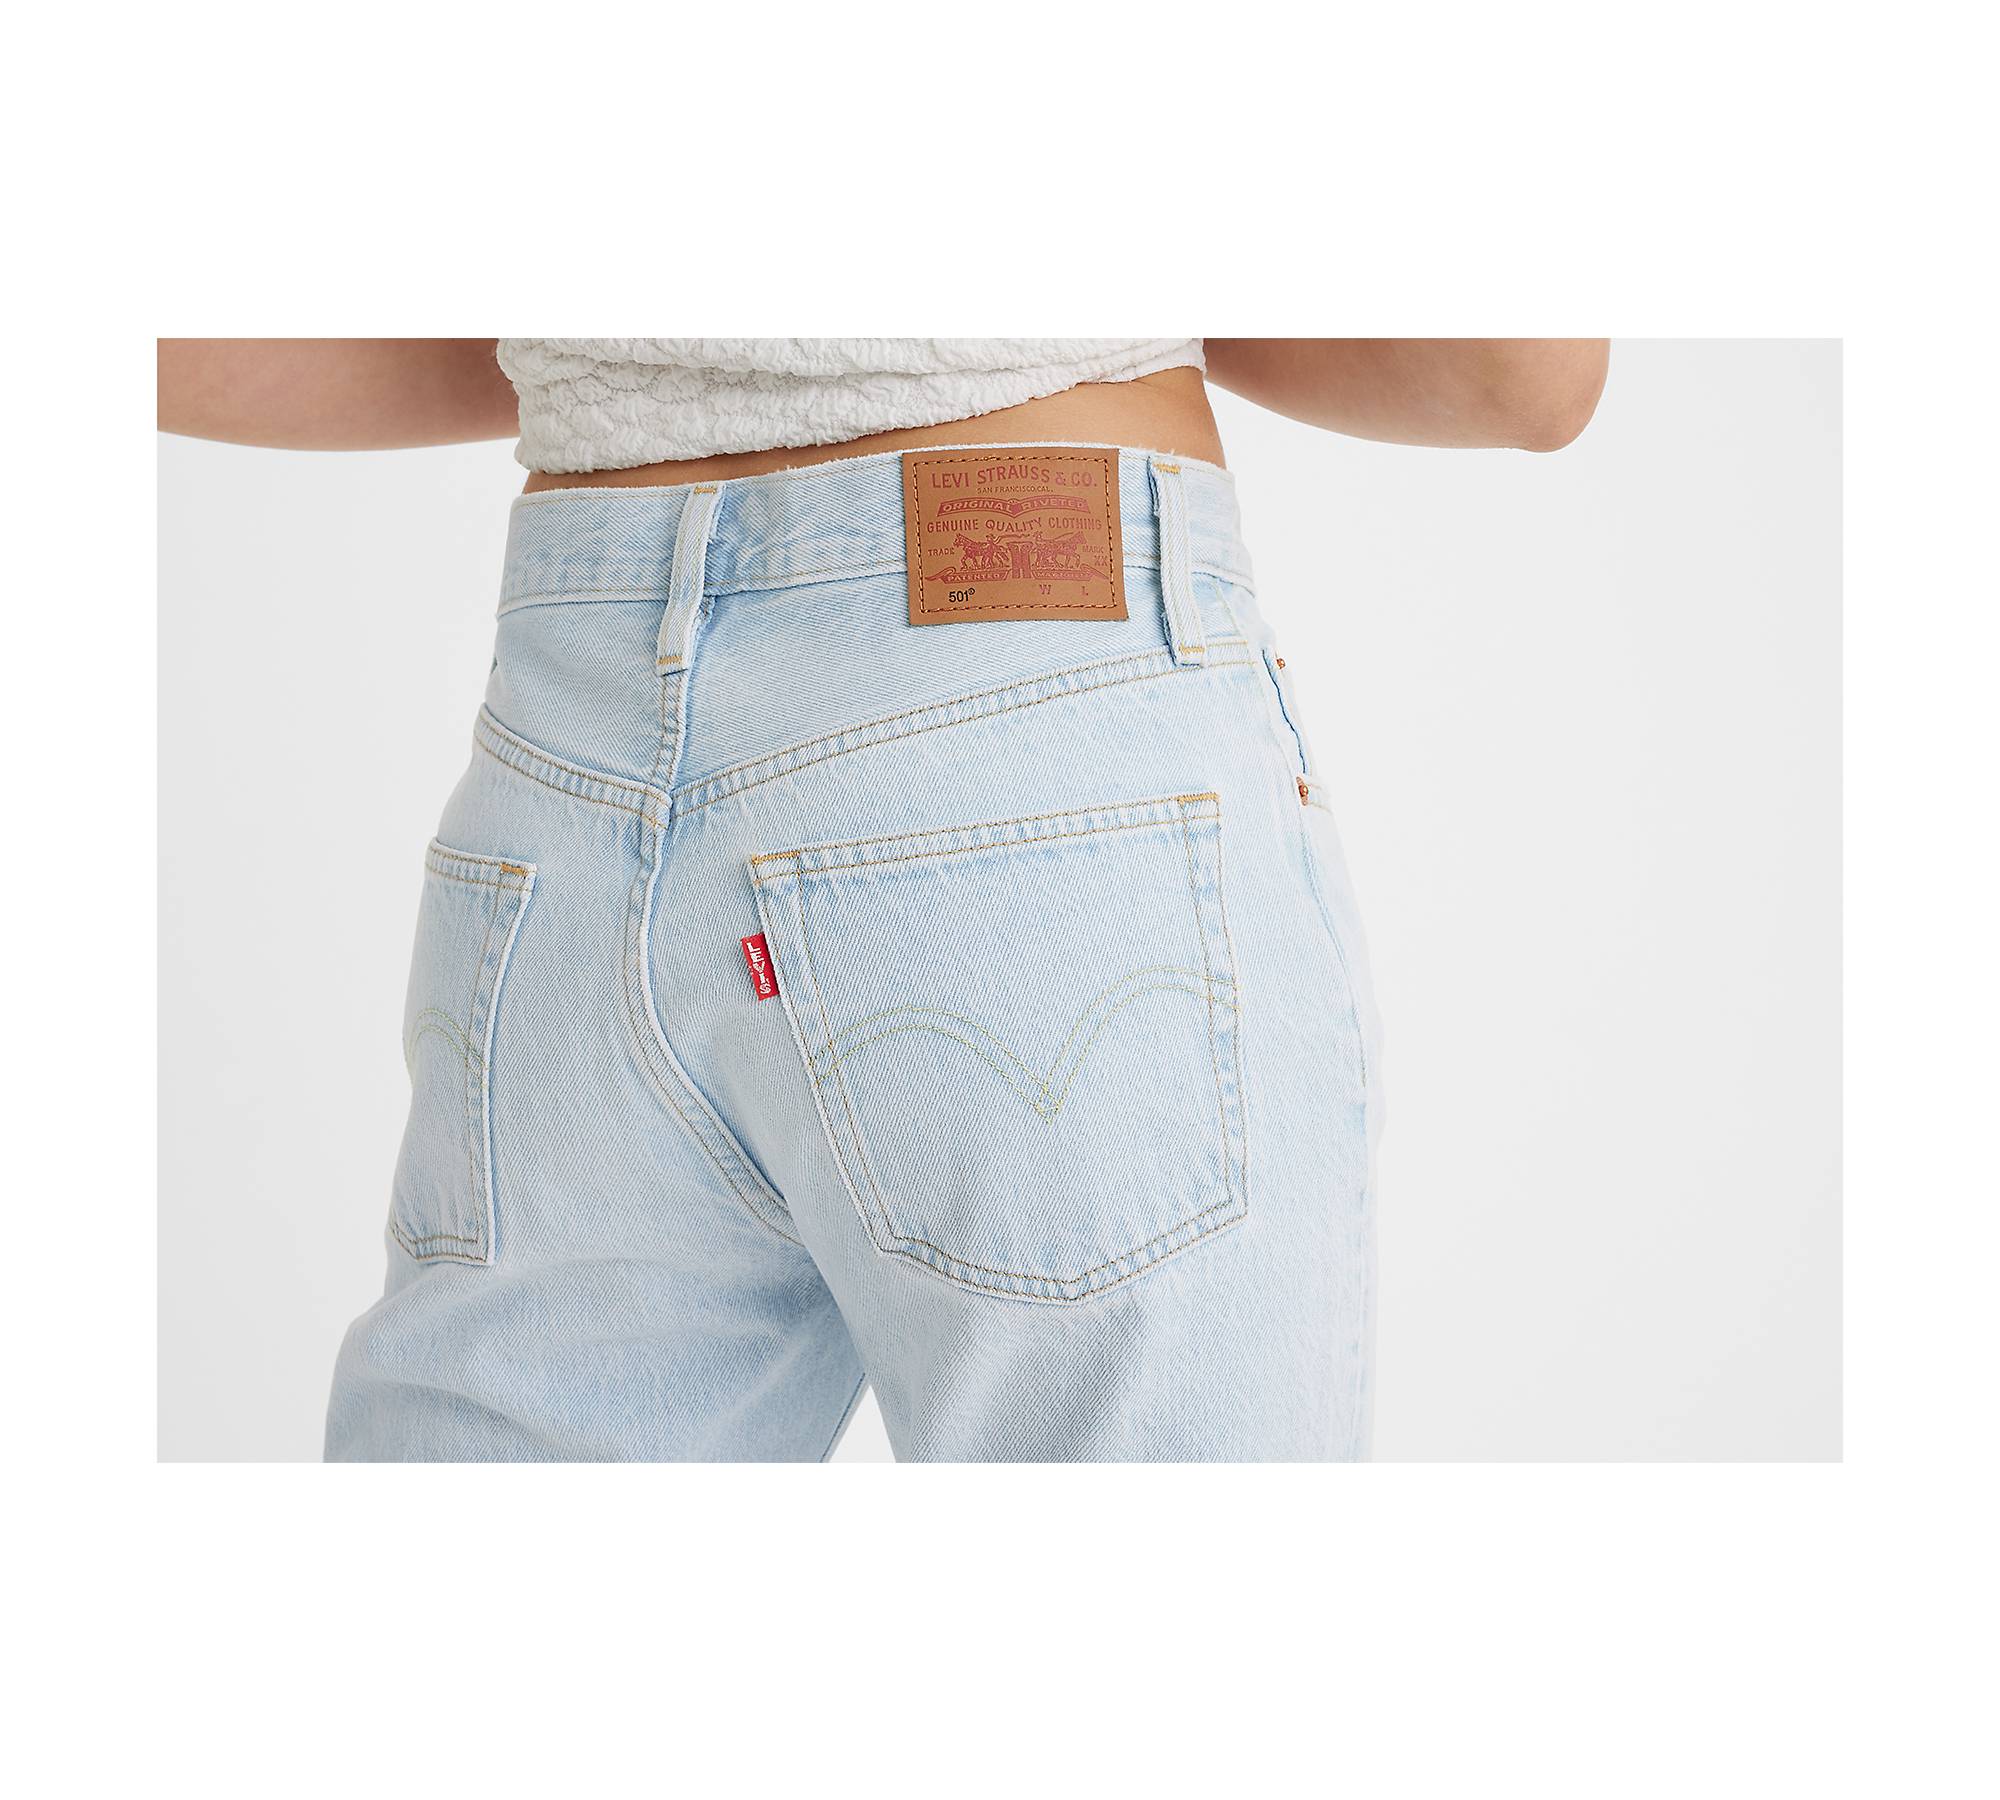 501® Original Fit Women's Jeans - Light Wash